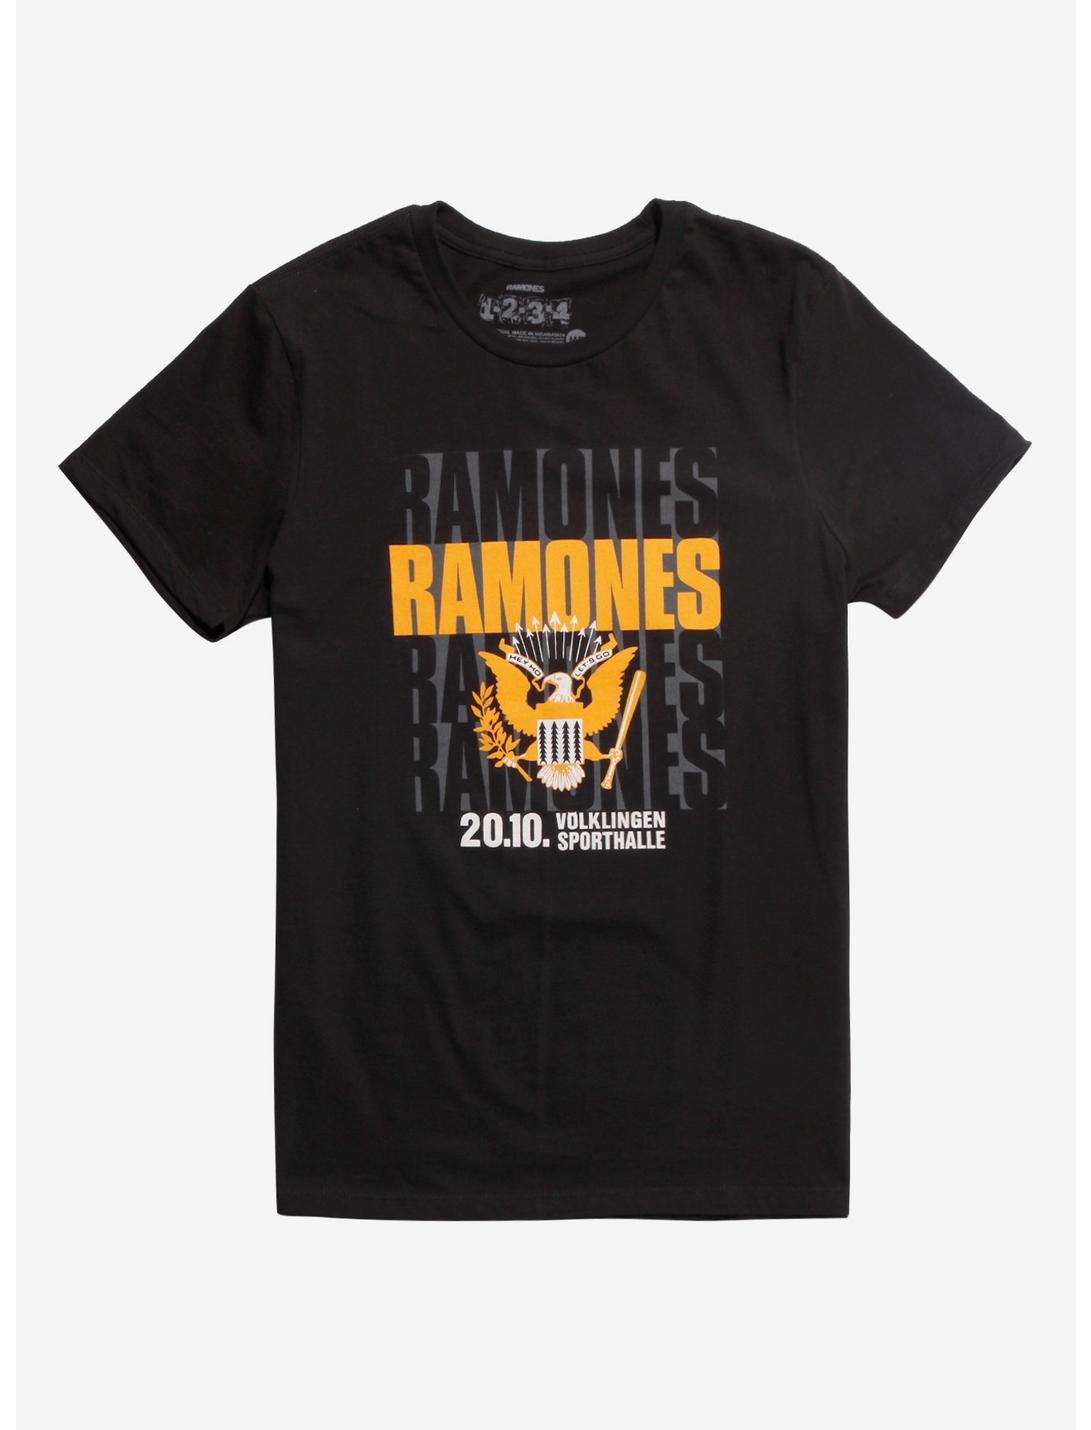 Ramones Ticket Stub T-Shirt, BLACK, hi-res